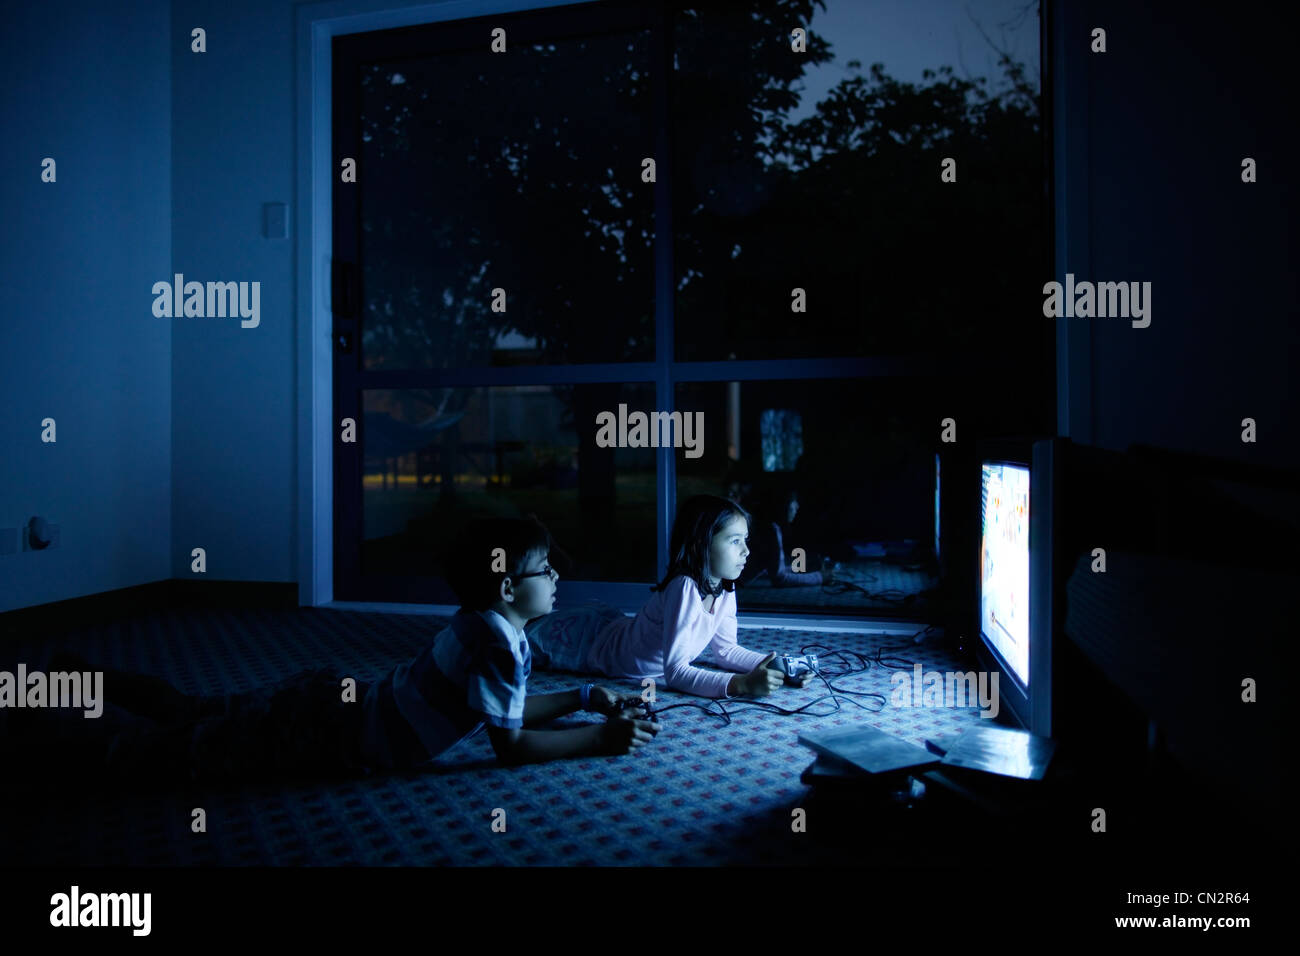 Iluminado por la pantalla, chico y chica juegan juegos de video. Foto de stock